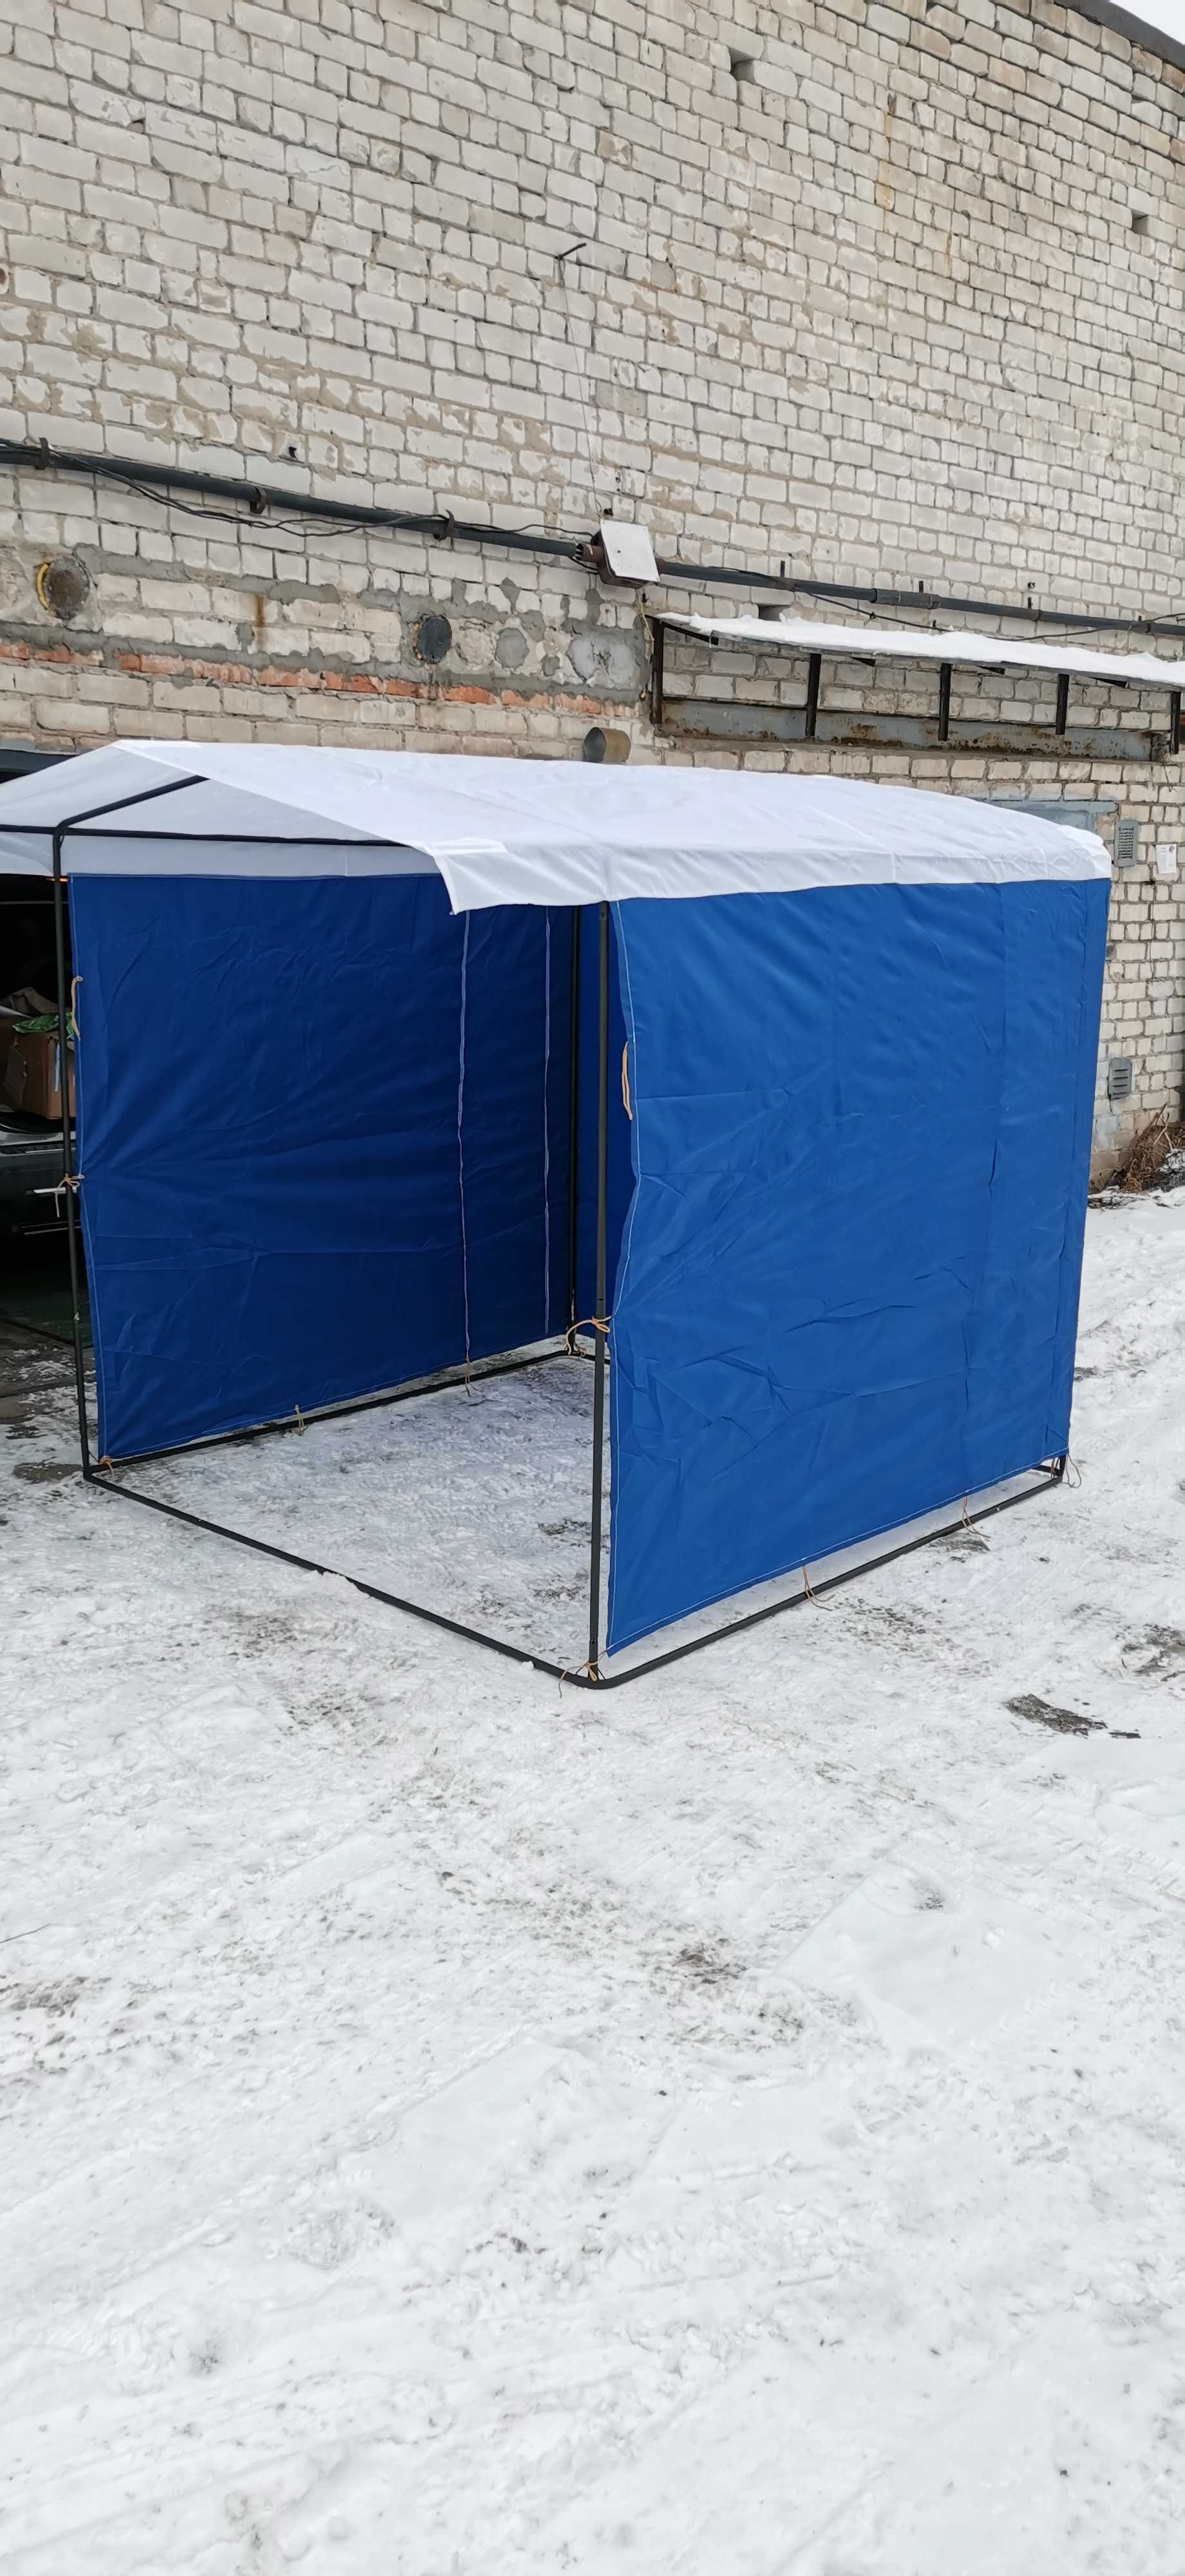 торговая палатка прокат аренда, 300 грн сутки